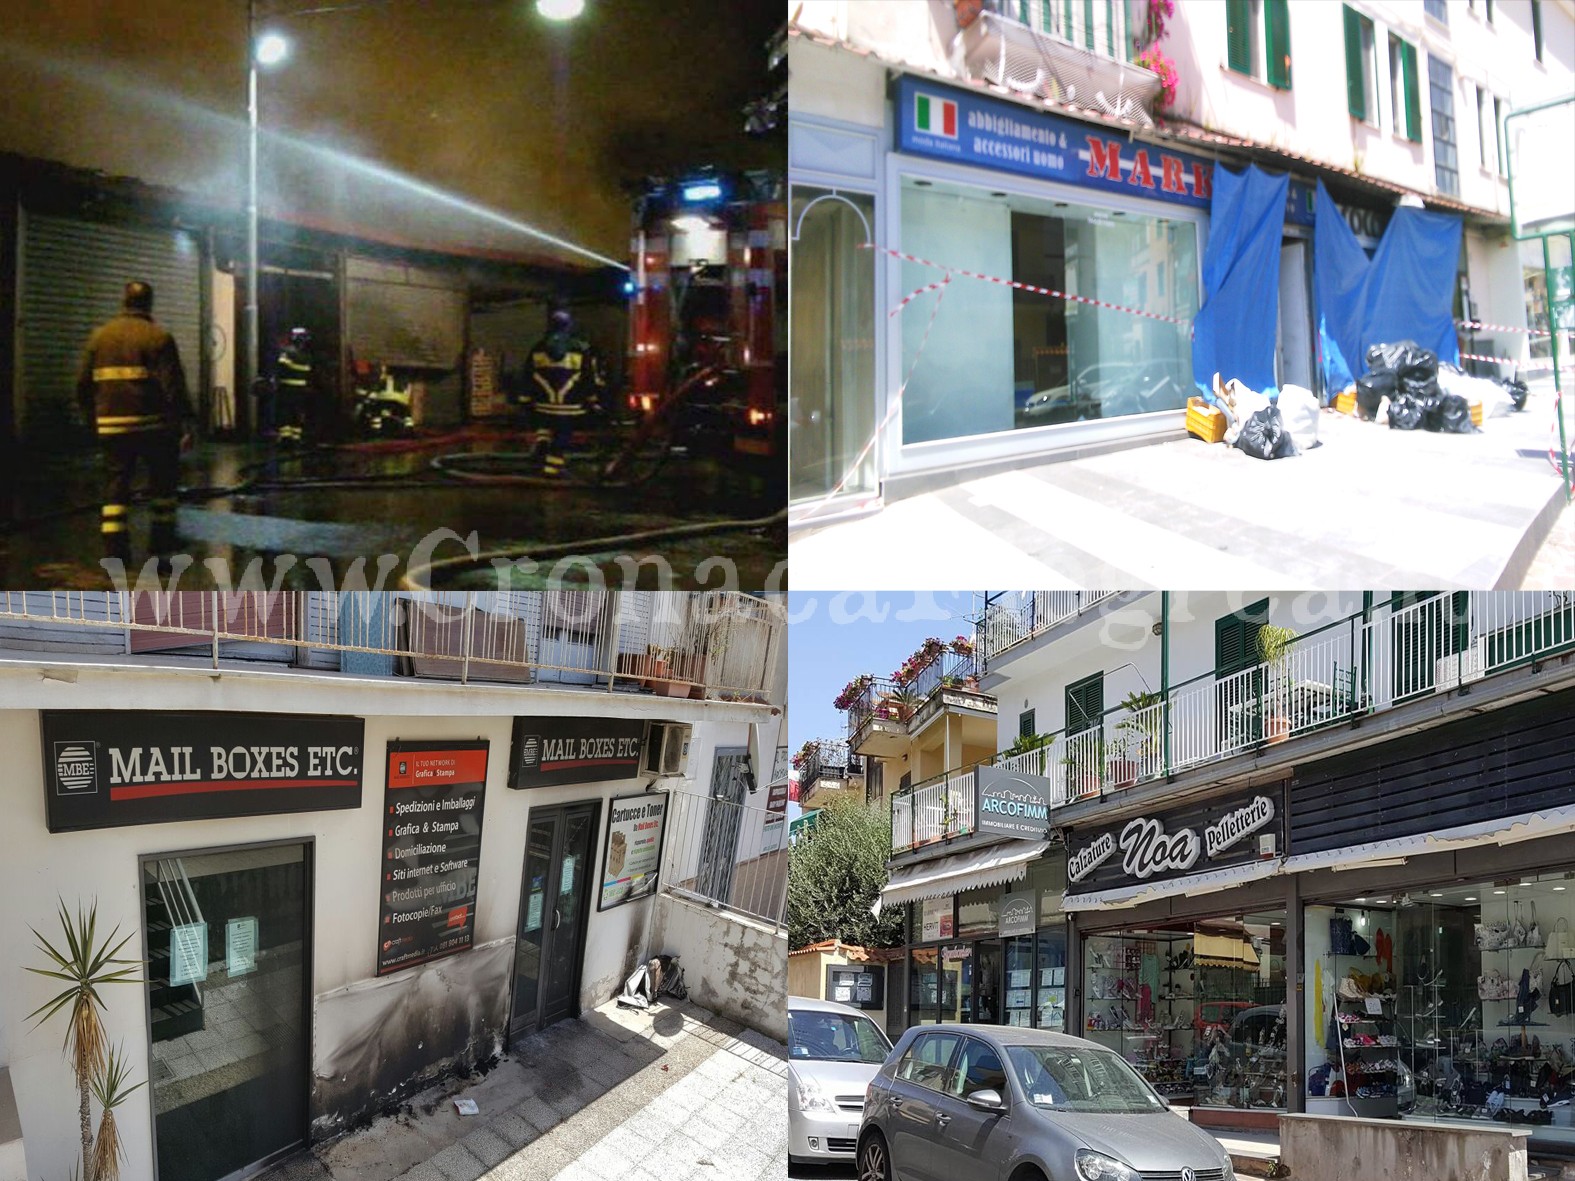 POZZUOLI/ Due negozi incendiati e uno danneggiato: l’ombra del racket sui commercianti? – LE FOTO